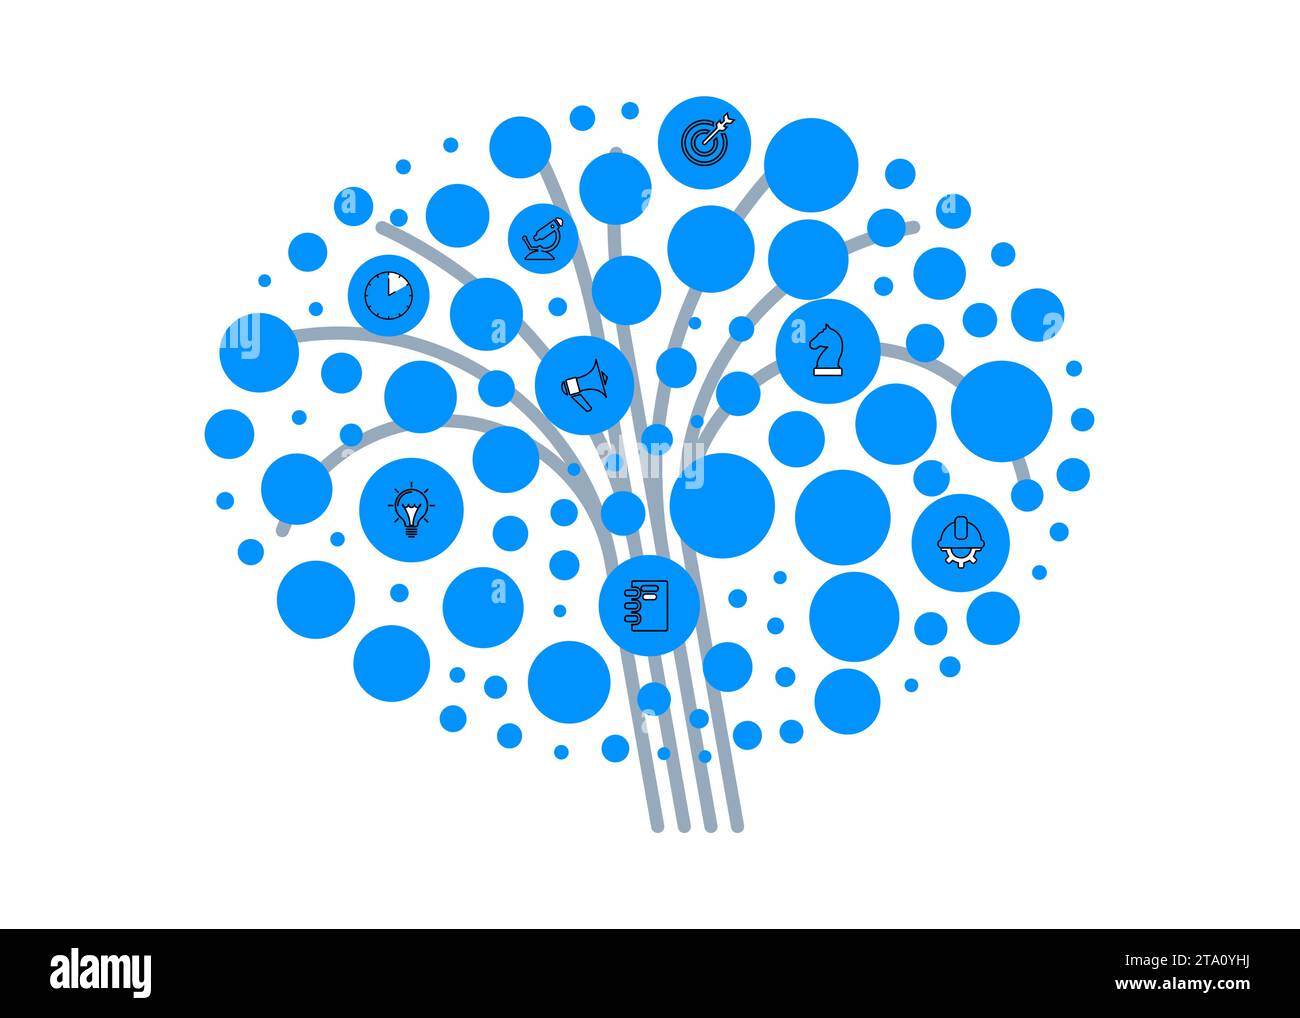 Abstrakter Baum mit blauen Kreisen und Symbolen. Vektor Stock Vektor